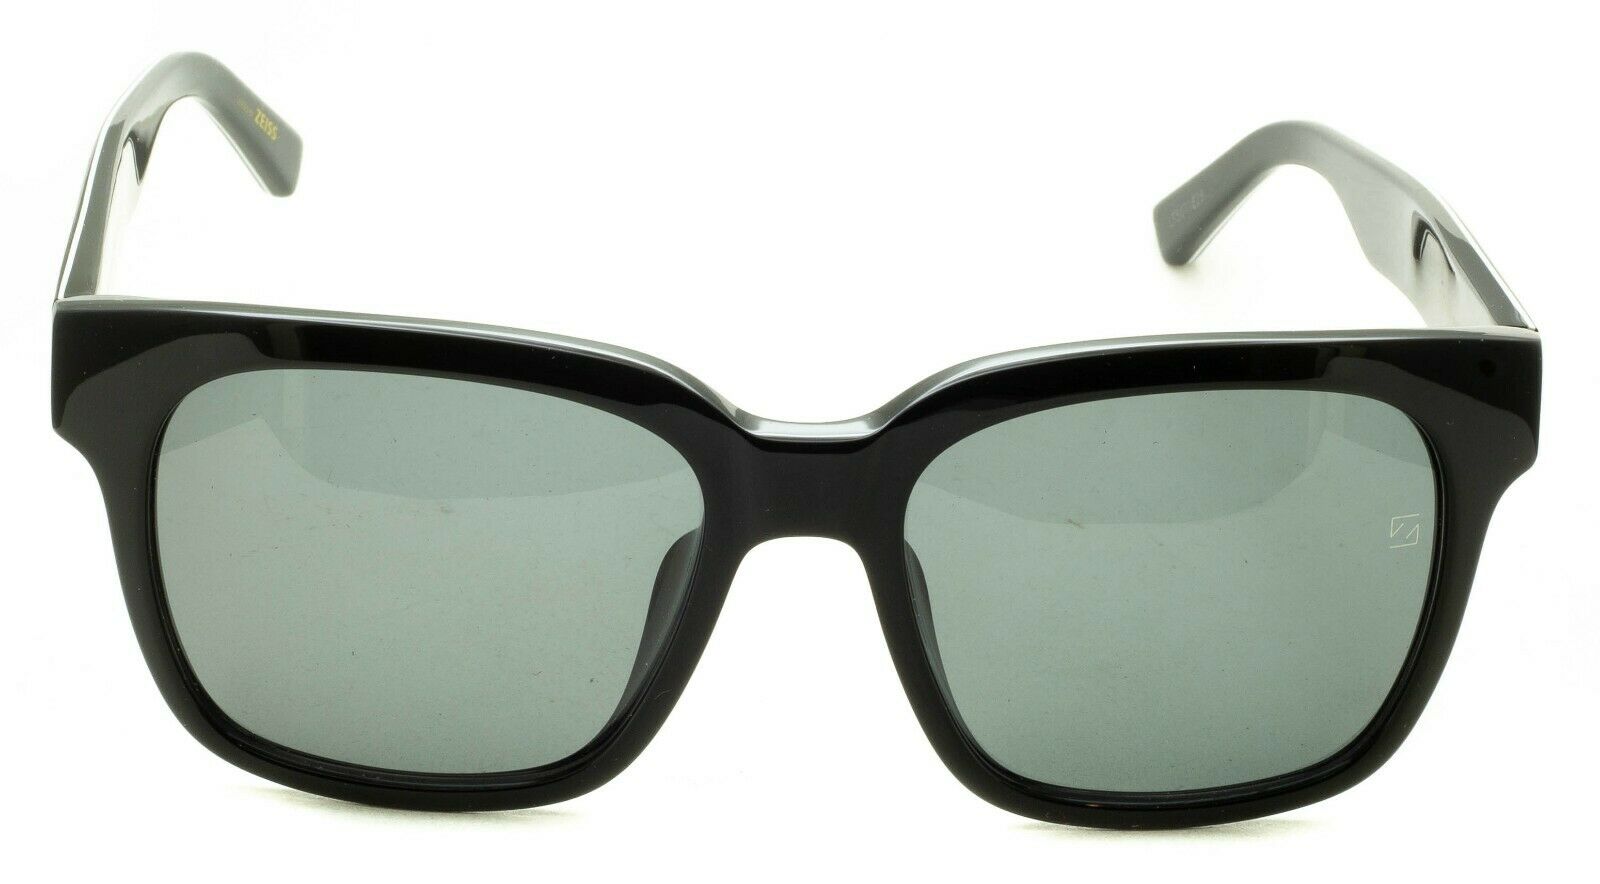 Ermenegildo Zegna EZ 0018-D 01A 56mm Sunglasses Shades Glasses 100% UV New Italy